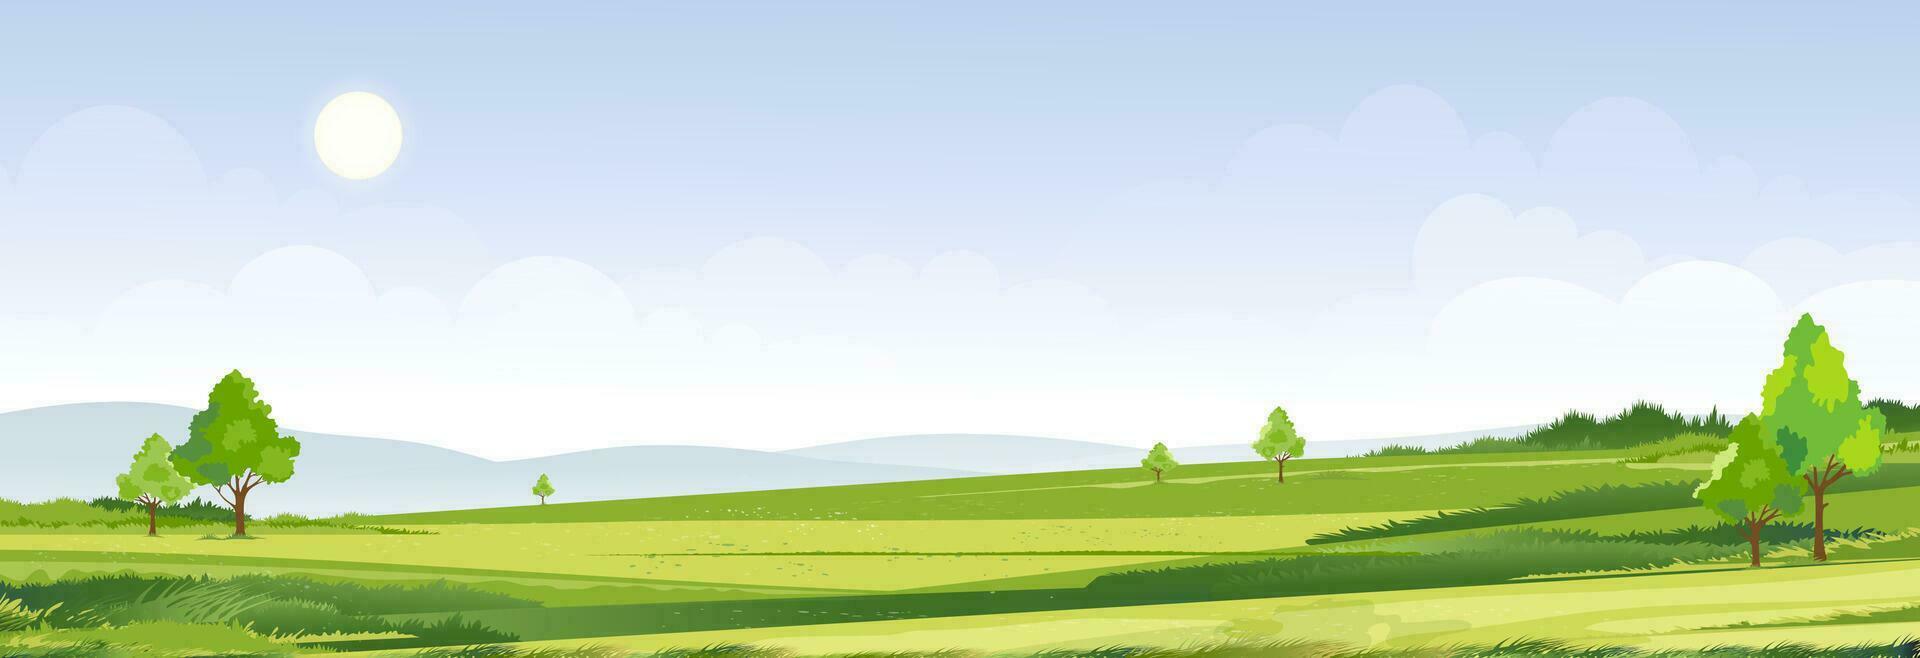 tempo di primavera, paesaggio estivo di una giornata di sole nel villaggio con campo verde, sfondo di nuvole e cielo blu. campagna rurale con montagna, prati, luce solare al mattino, sfondo del fumetto di vettore paesaggio della natura